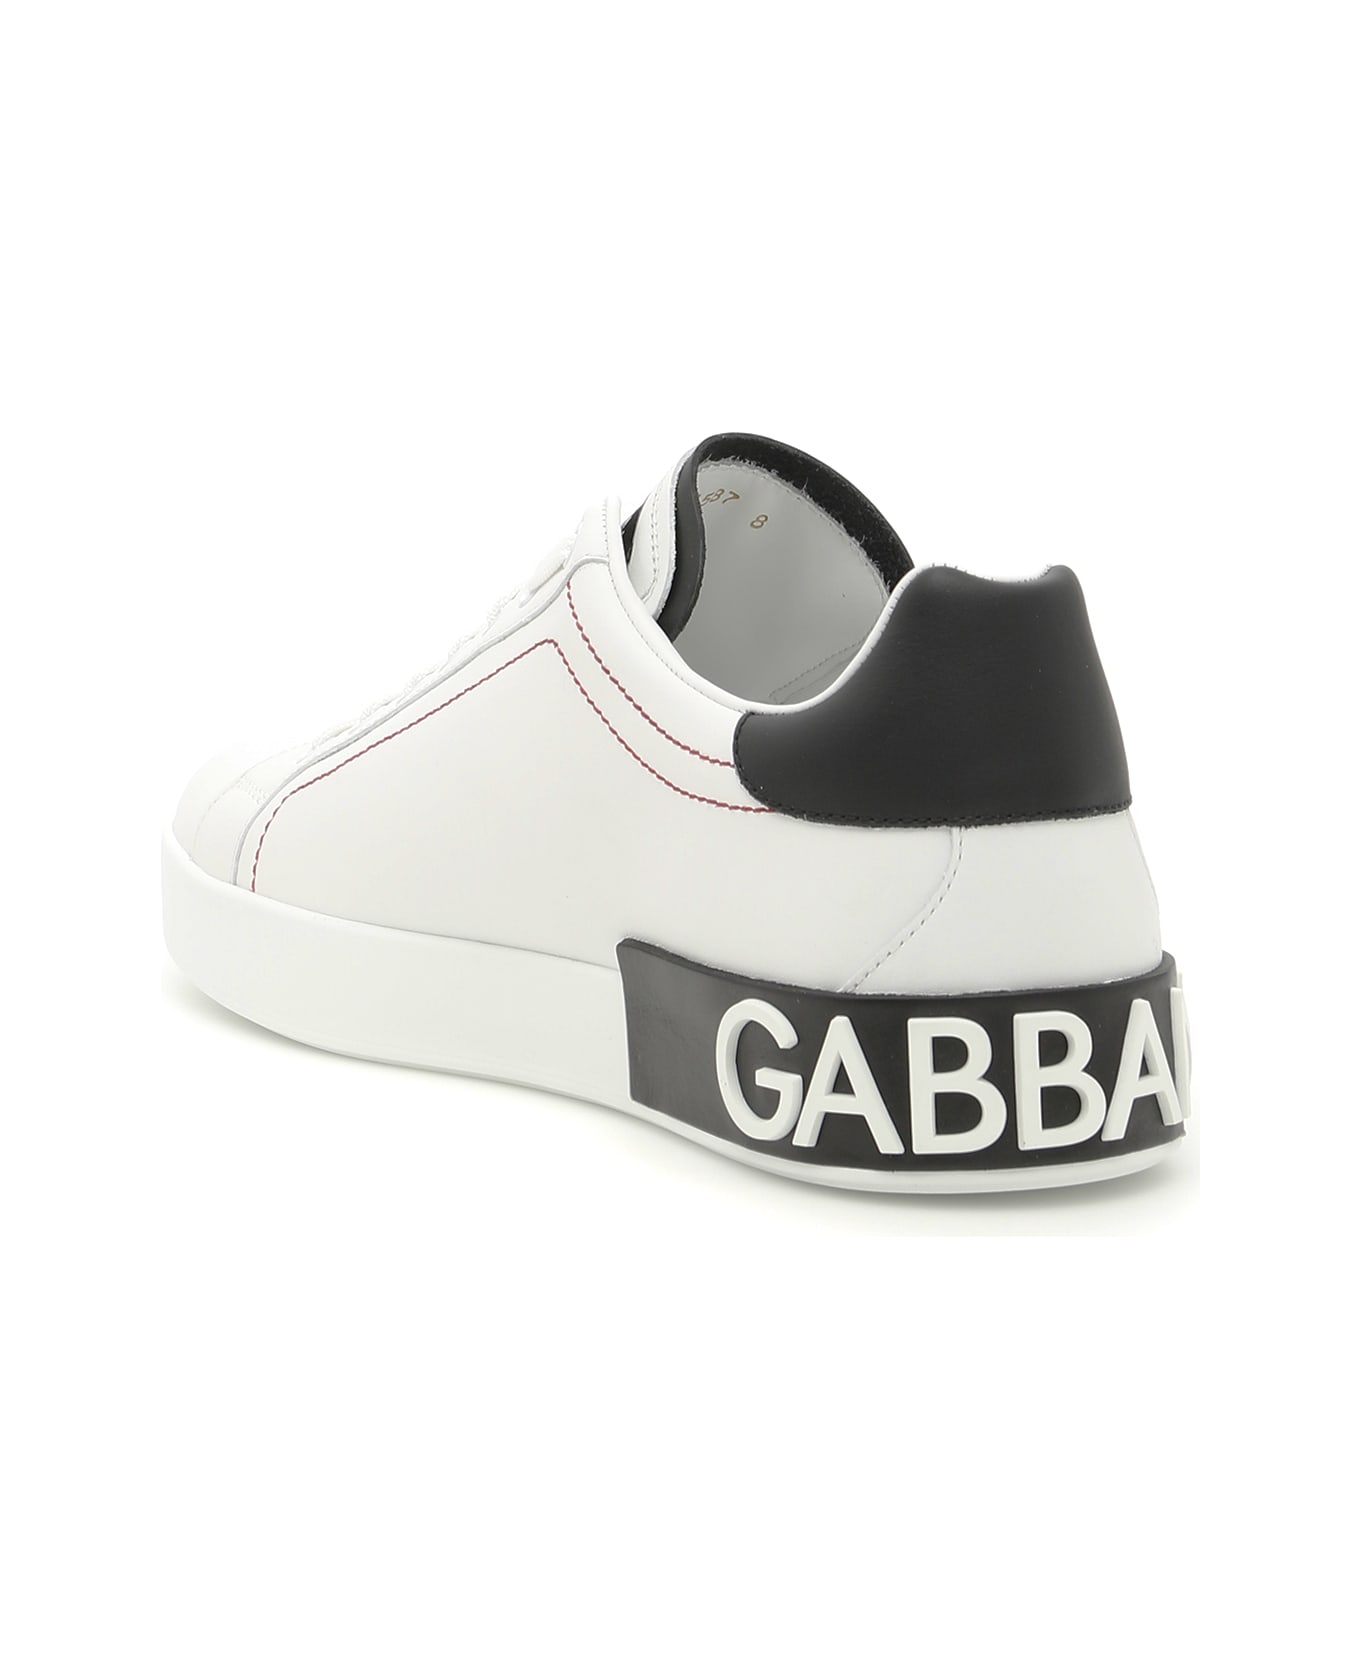 Dolce & Gabbana Portofino Nappa Leather Sneakers - BIANCO NERO